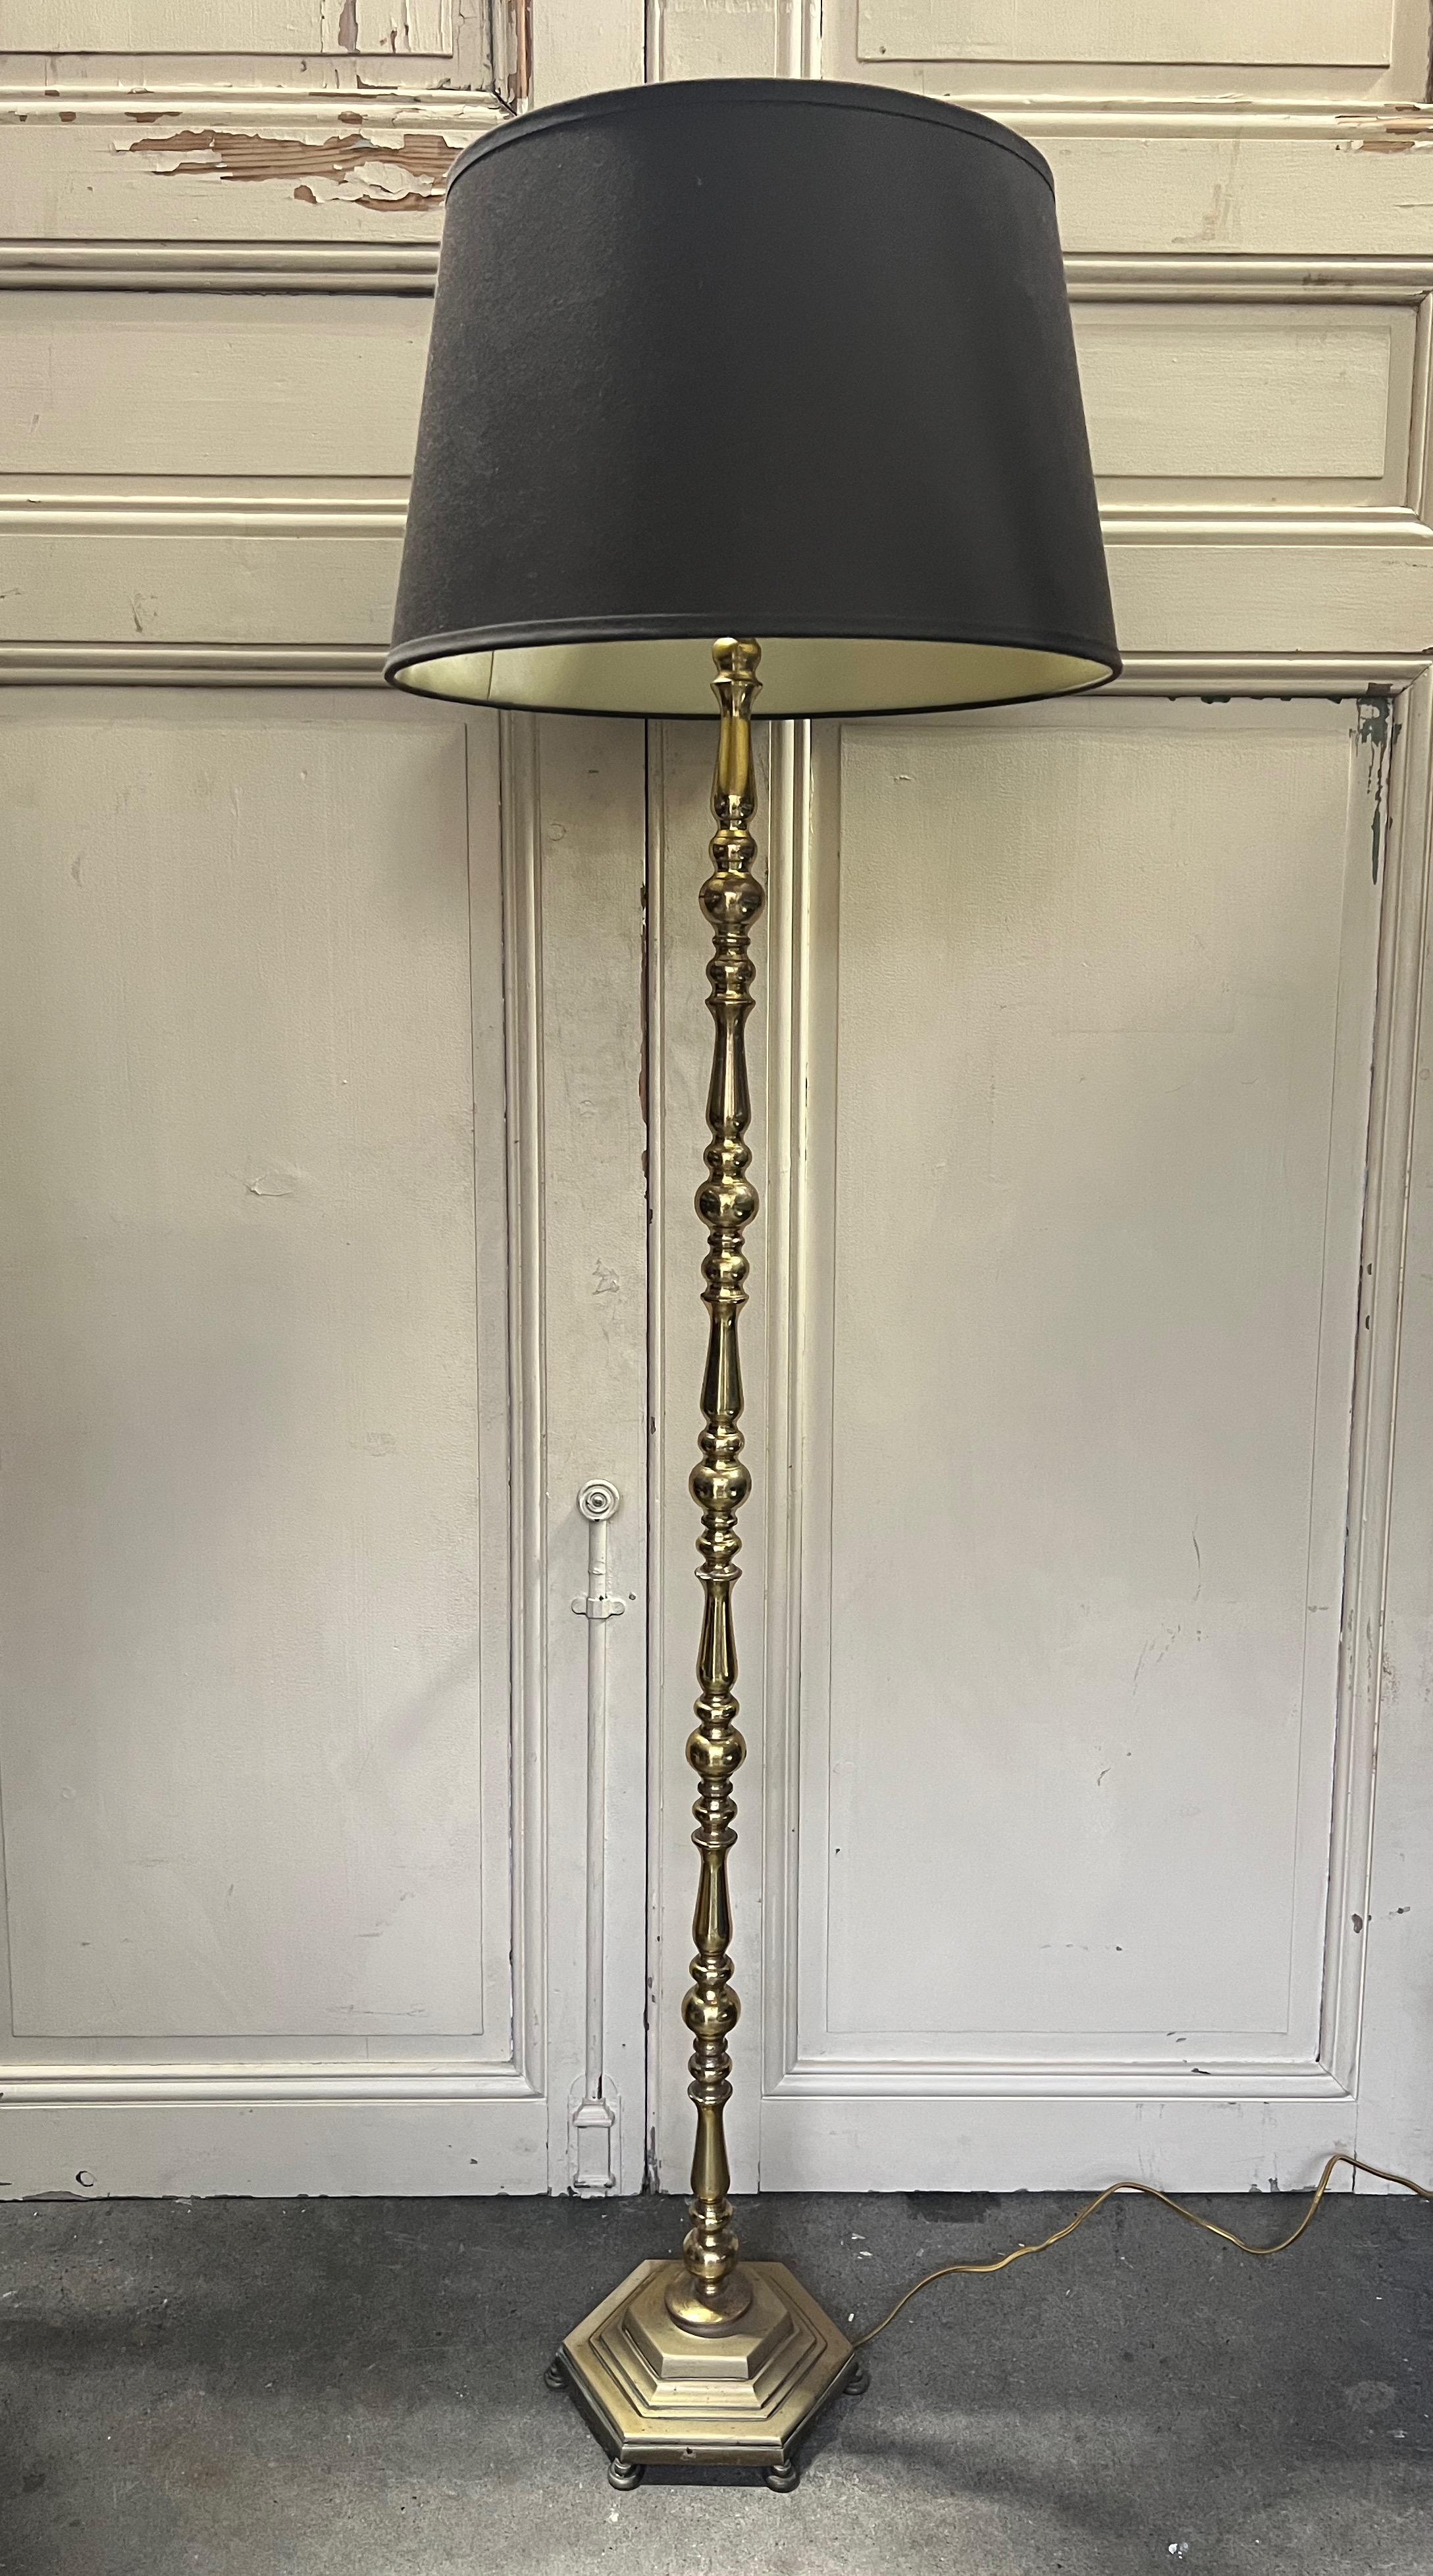 Voici un superbe lampadaire français des années 1940, fabriqué de manière experte à partir de laiton et de bronze de haute qualité. Cette pièce captivante présente une base hexagonale moulée et des éléments méticuleusement tournés. L'ensemble de la